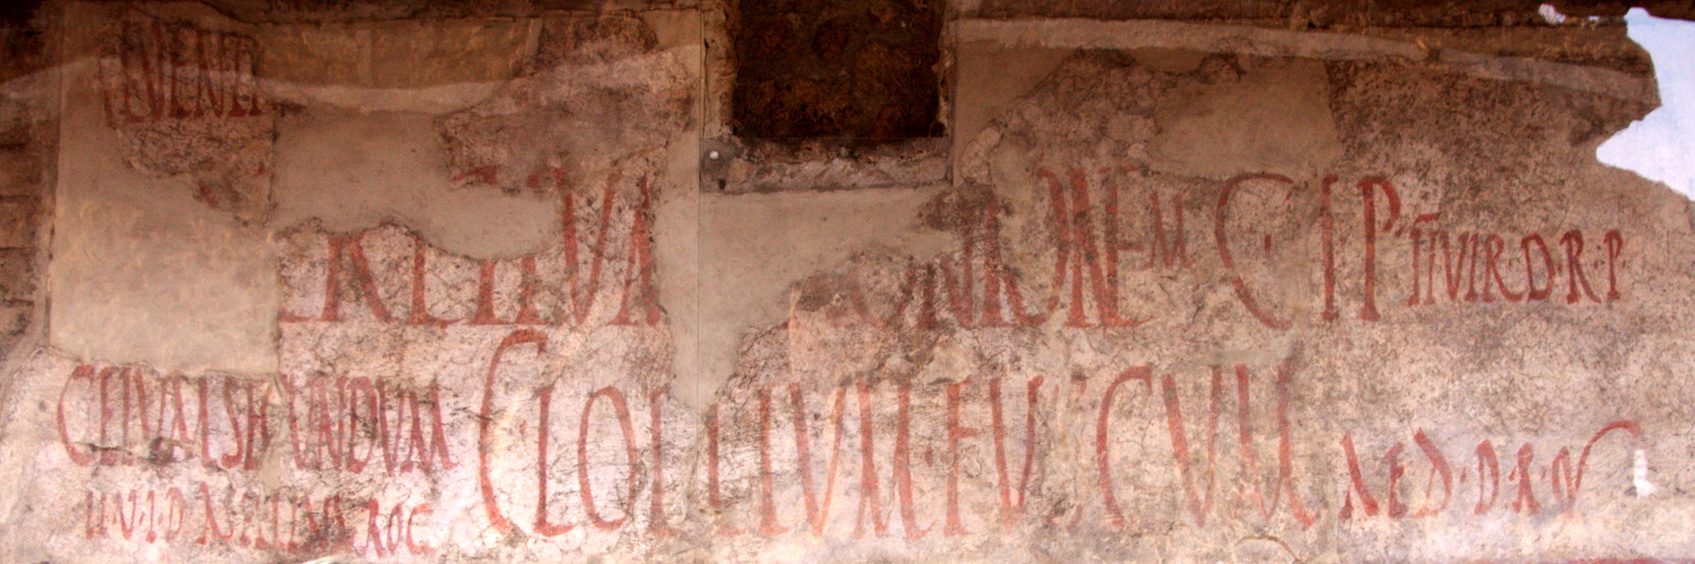 Pompeia-ViaAbundancia-propagandaElectoral-5445.jpg